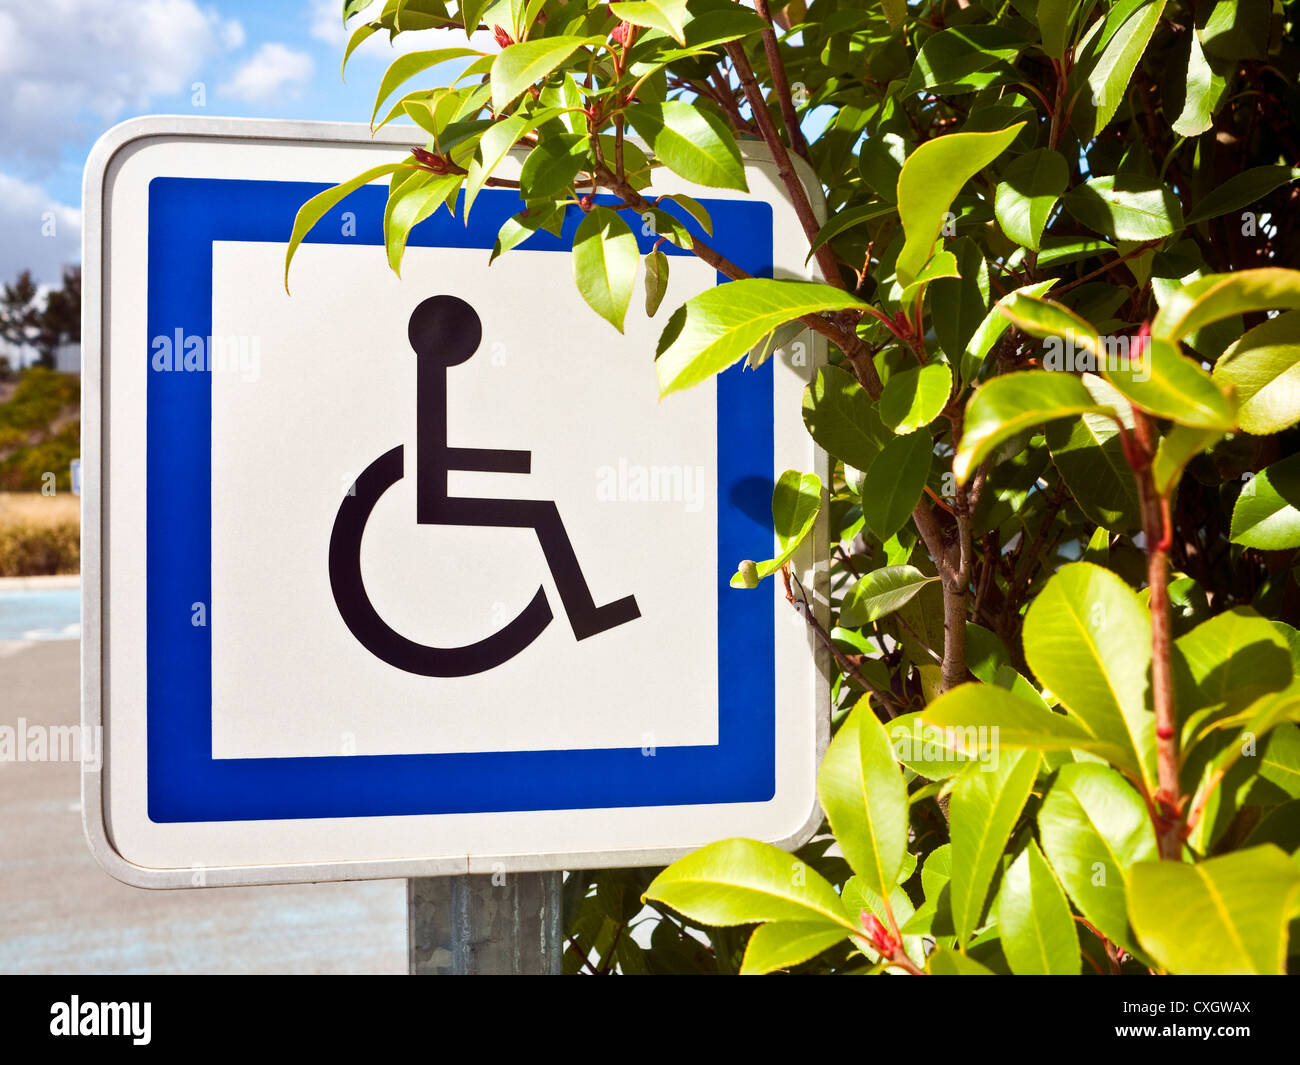 Parking voiture information métal réfléchissant signe pour personnes handicapées / utilisateurs de fauteuil roulant, France. Banque D'Images